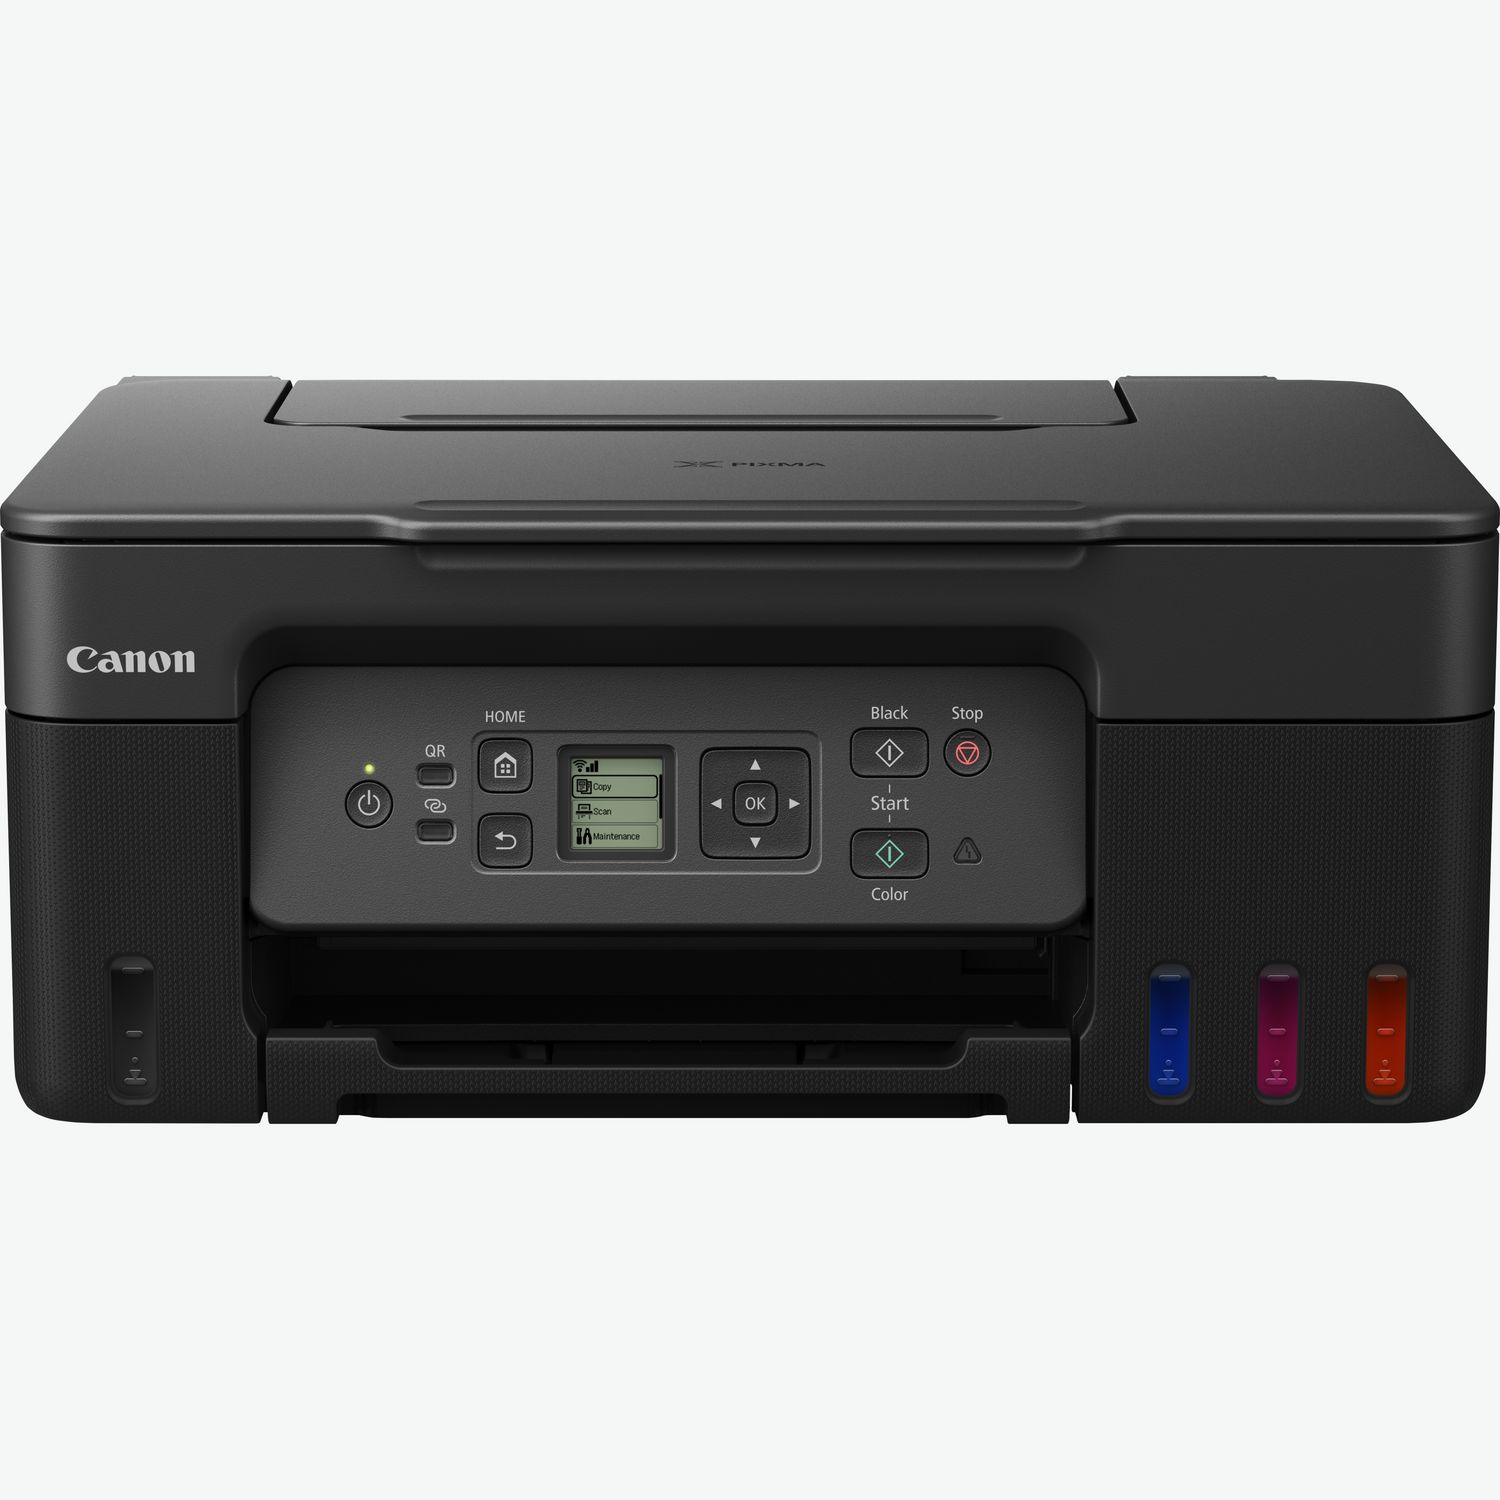 Nuove stampanti Canon con serbatoi d'inchiostro ricaricabili